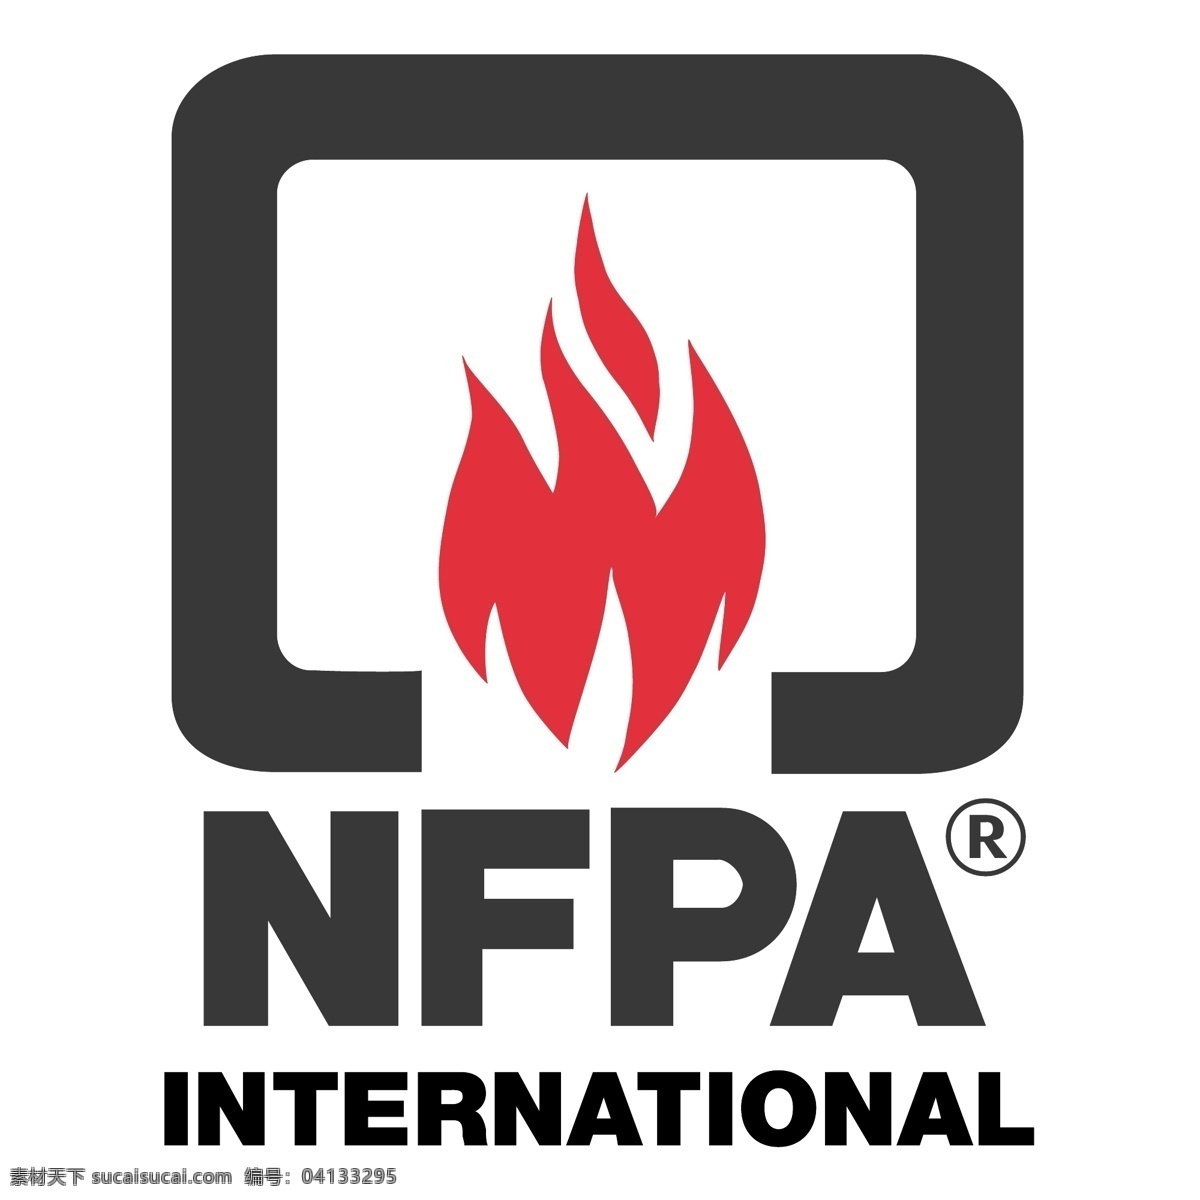 美国 消防协会 国际 nfpa 标志 向量 艺术 载体 国际形象 国际矢量图像 国际设计 建筑家居